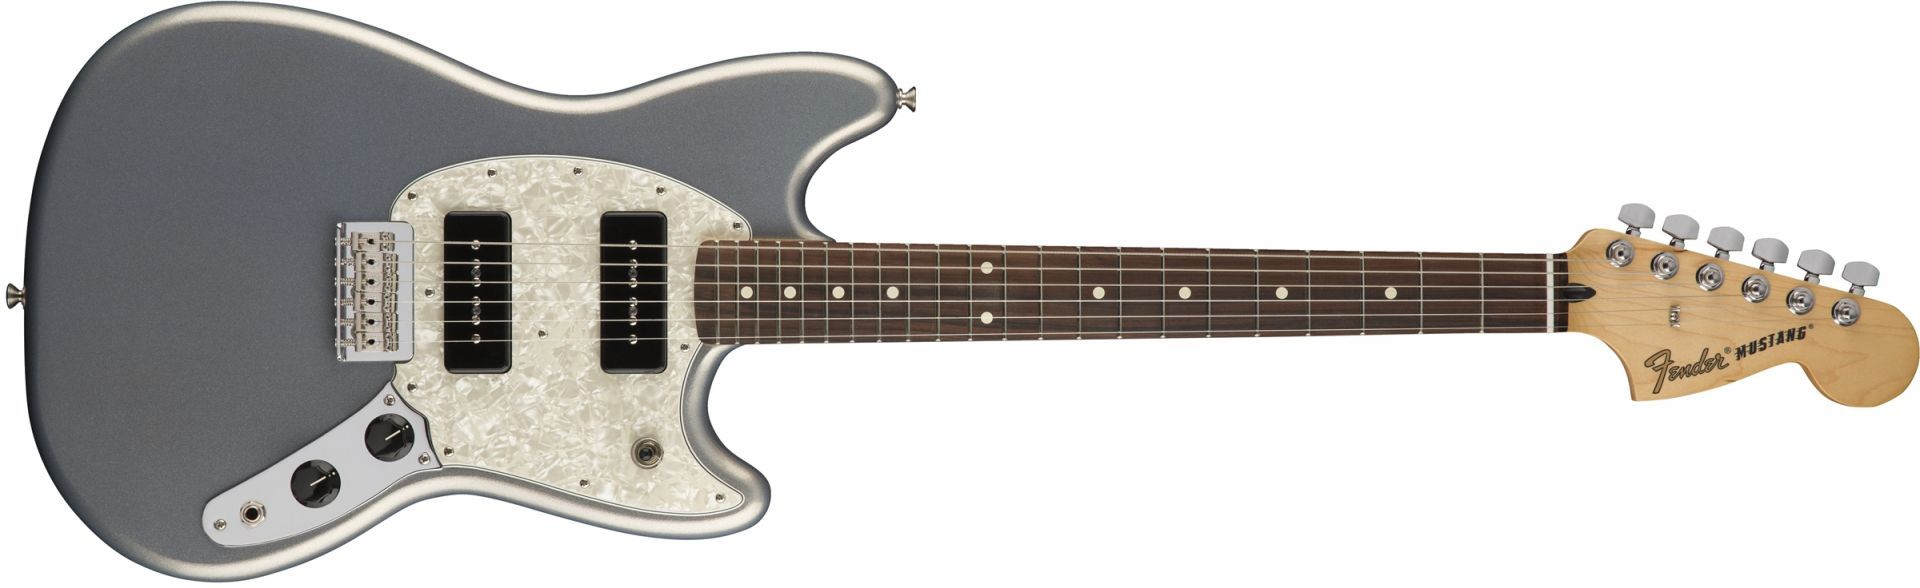 Fender Mustang 90 Silver